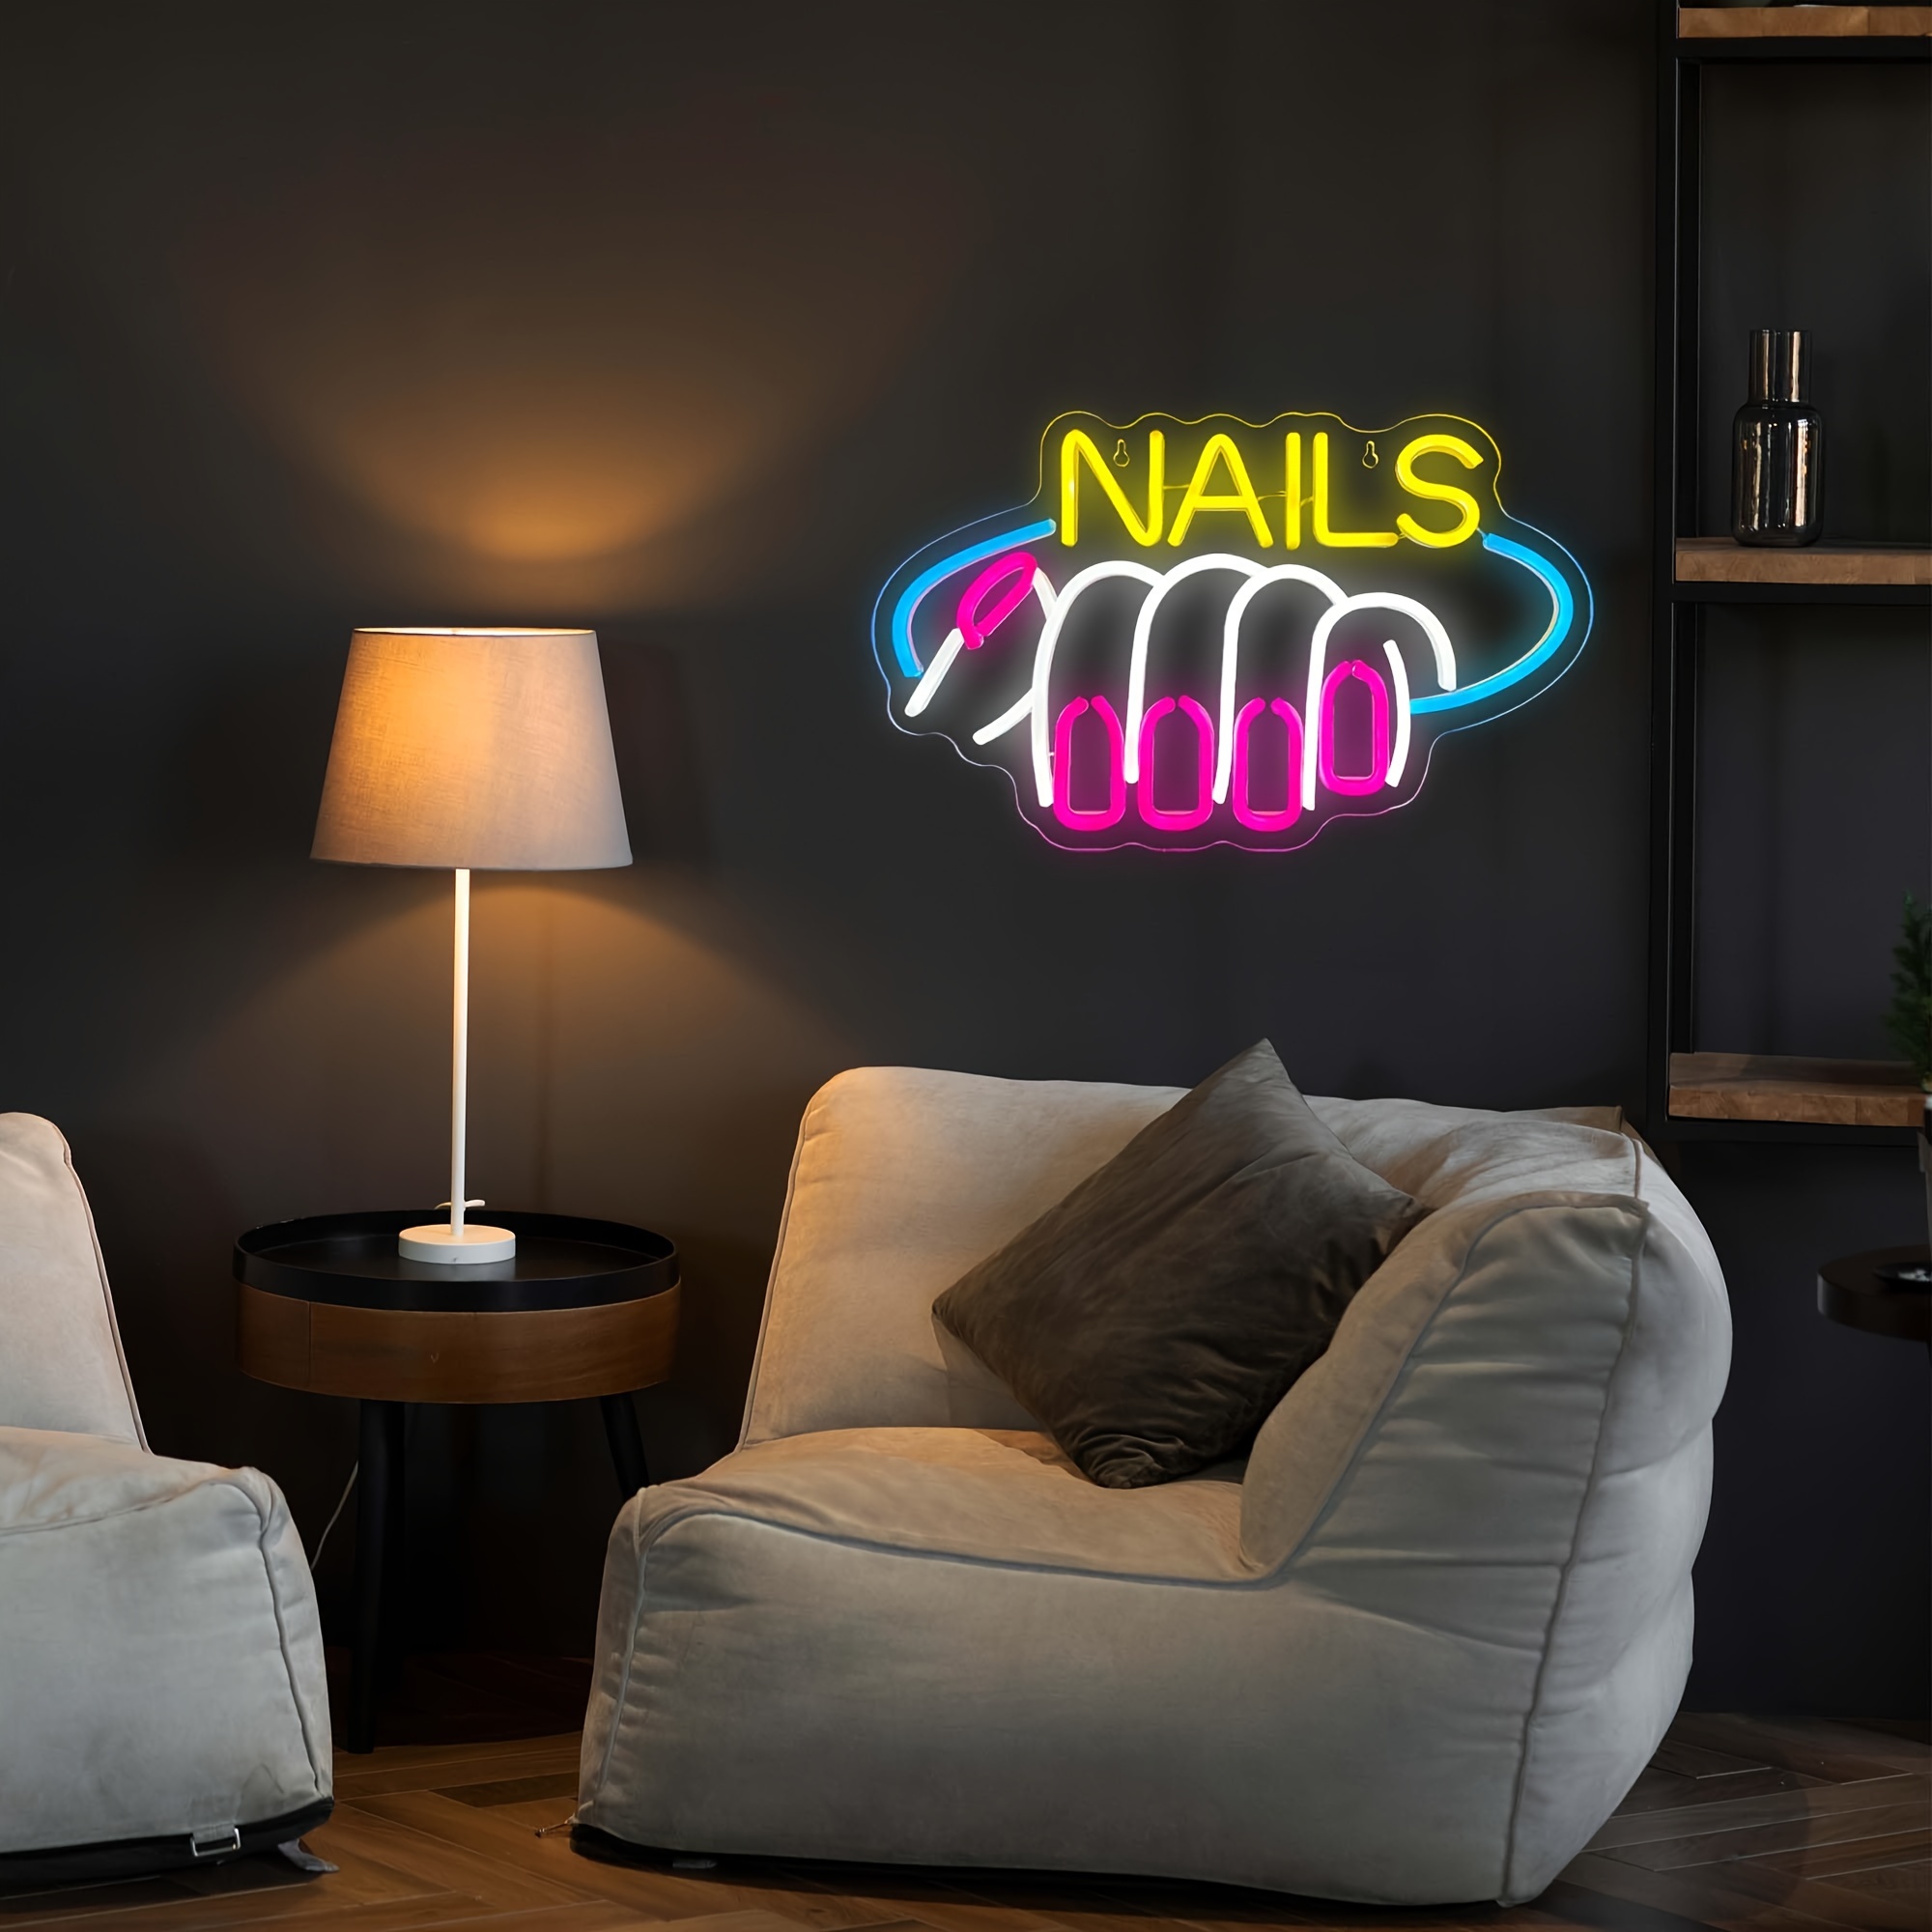 Nail Salon Wall Decor, Nail Room Wall Art, Nail Studio Decor, Nail